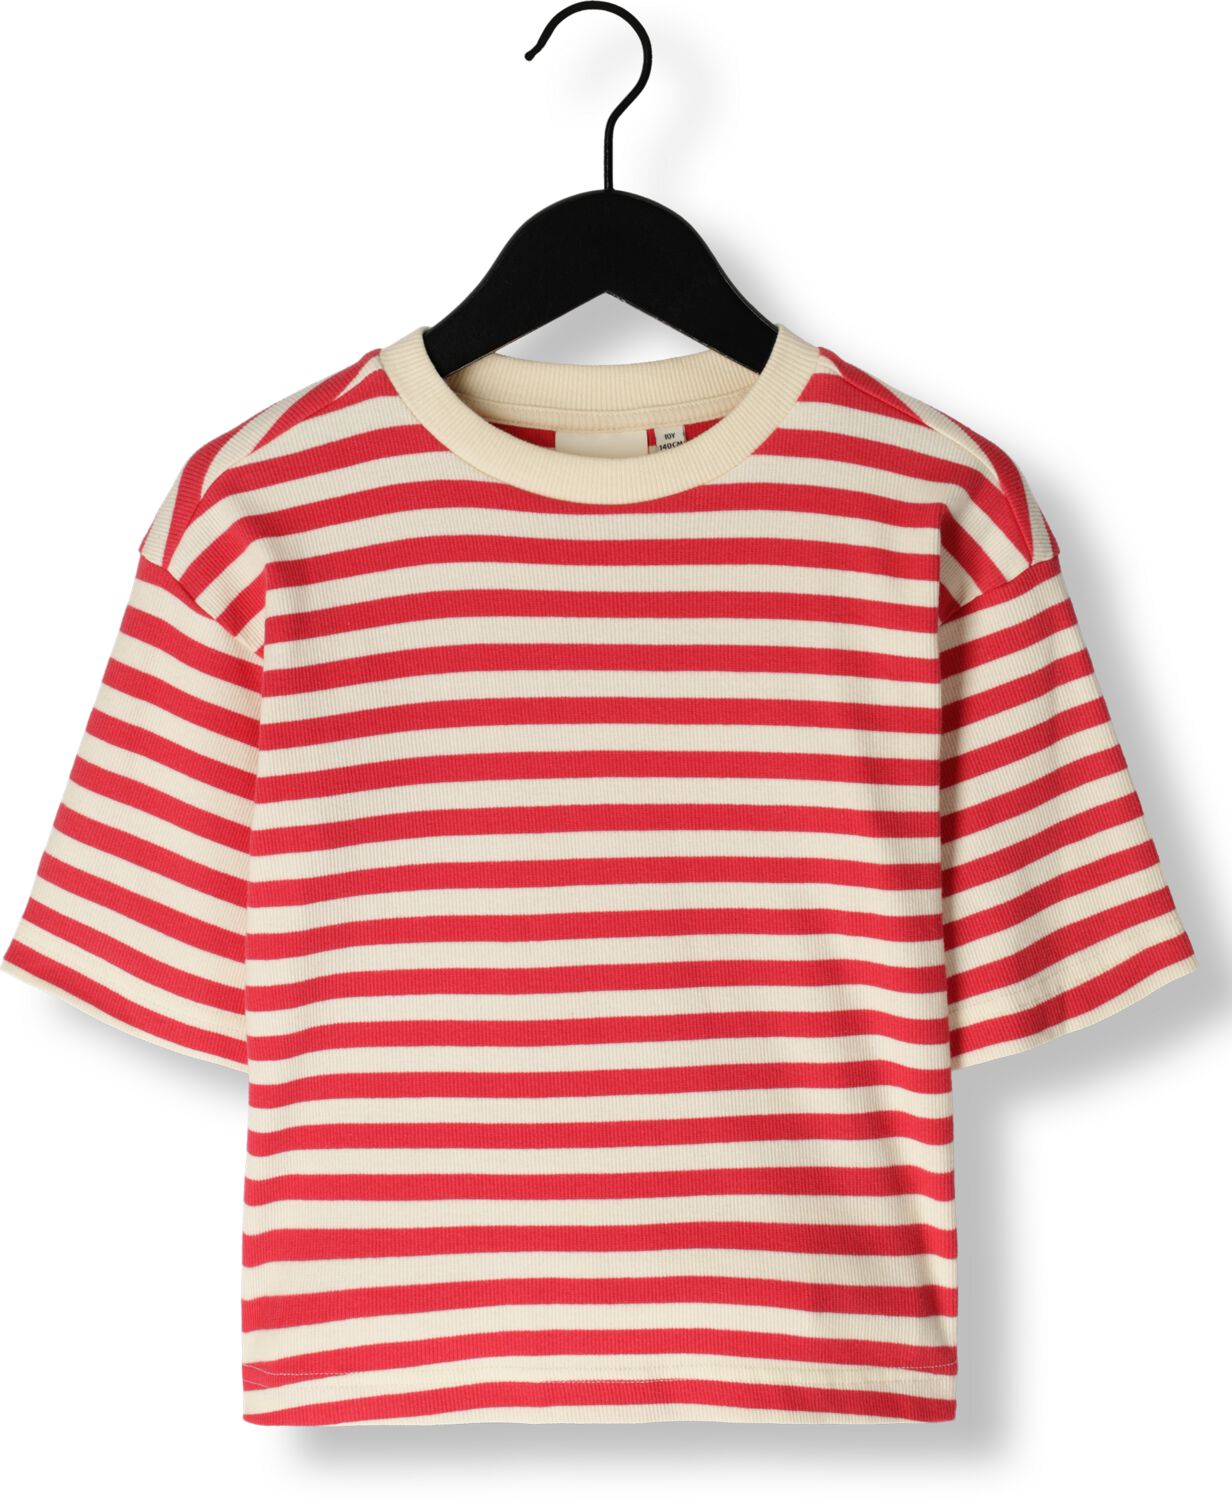 Sofie Schnoor gestreept T-shirt rood wit Meisjes Katoen Ronde hals Streep 164